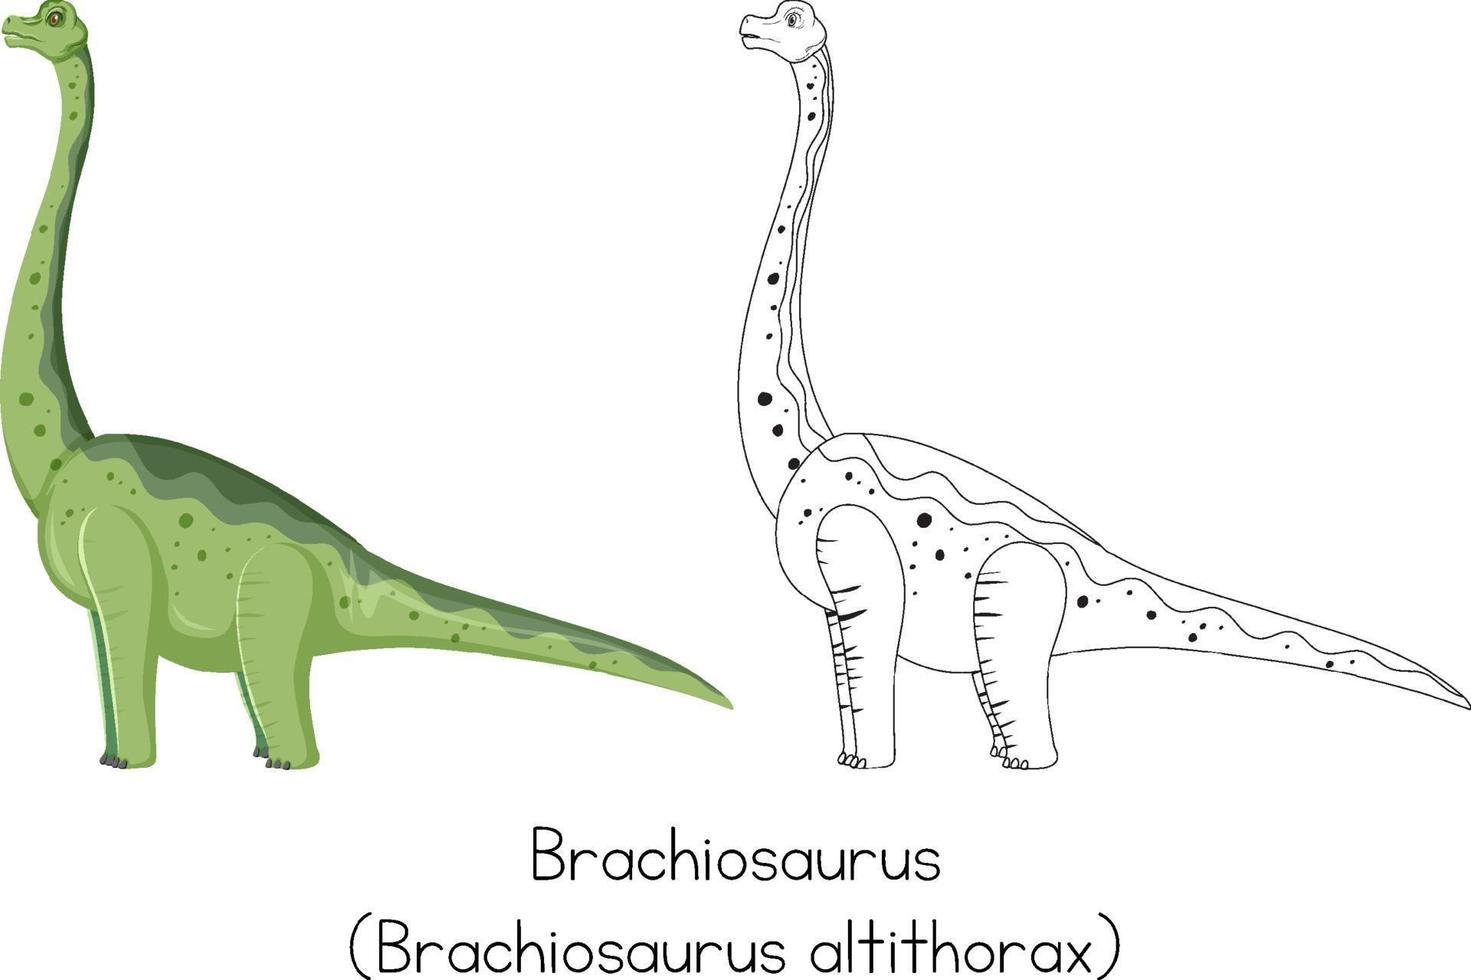 dinosaurus schetsen van brachiosaurus vector